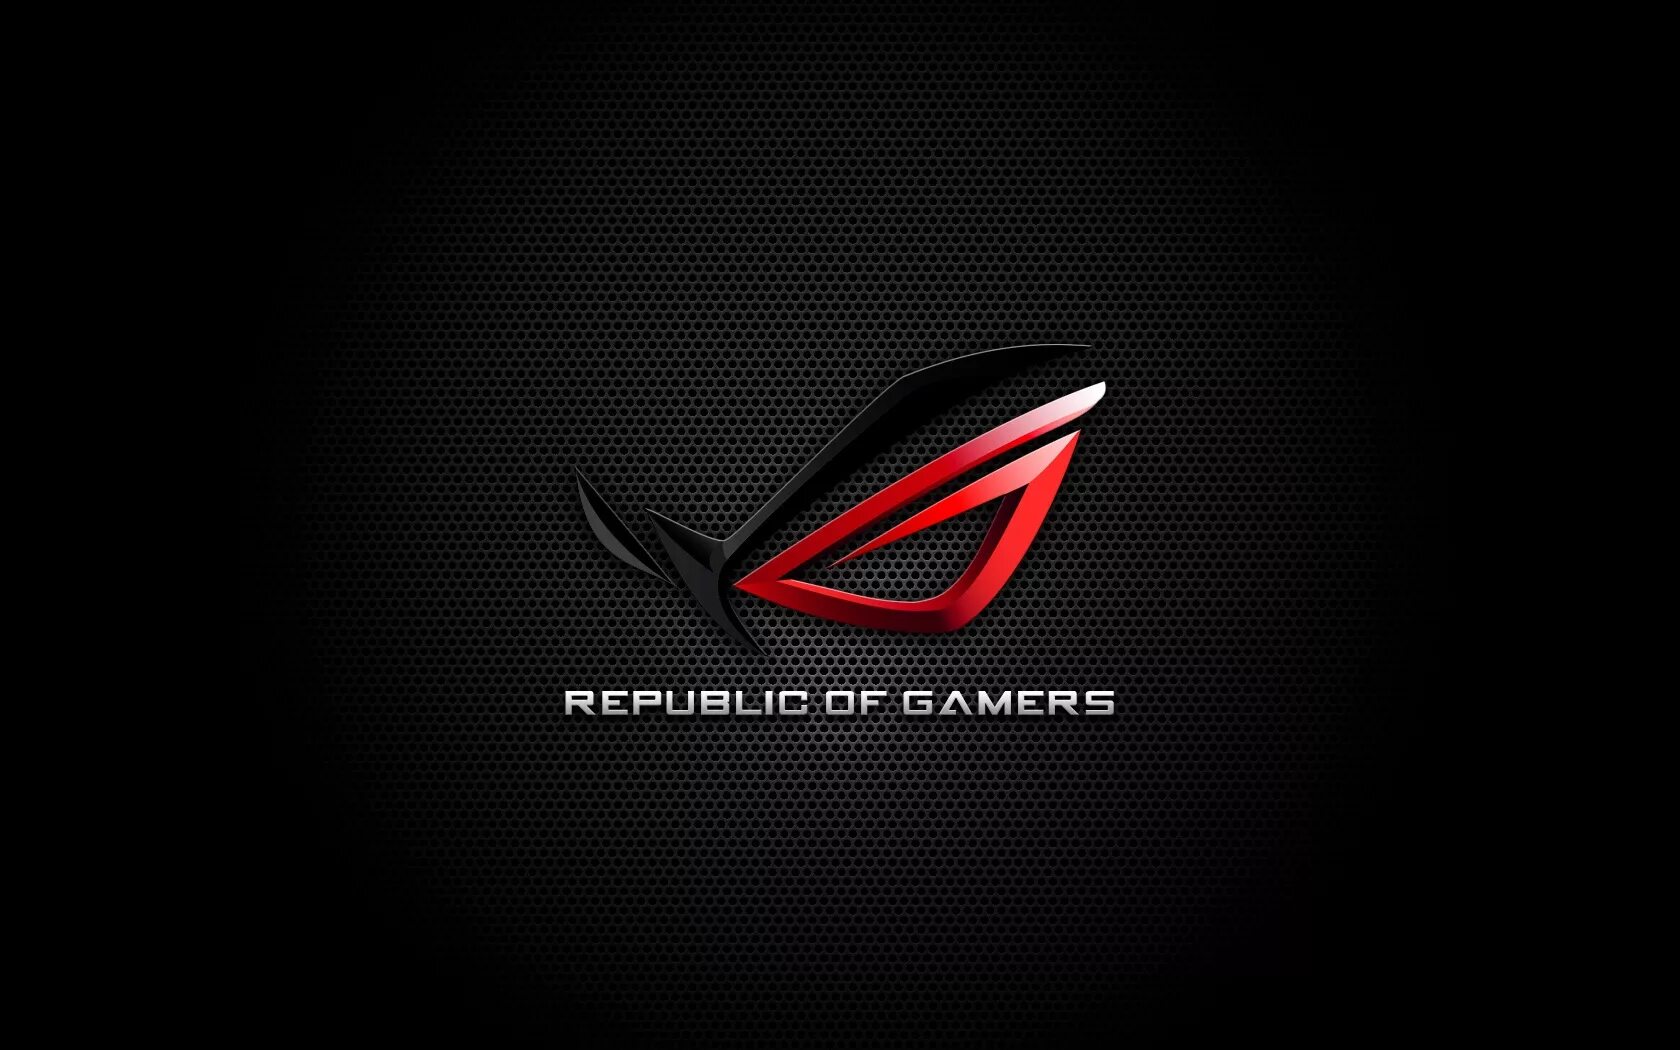 ASUS Republic of Gamers ноутбук. ASUS ROG Fon 7.